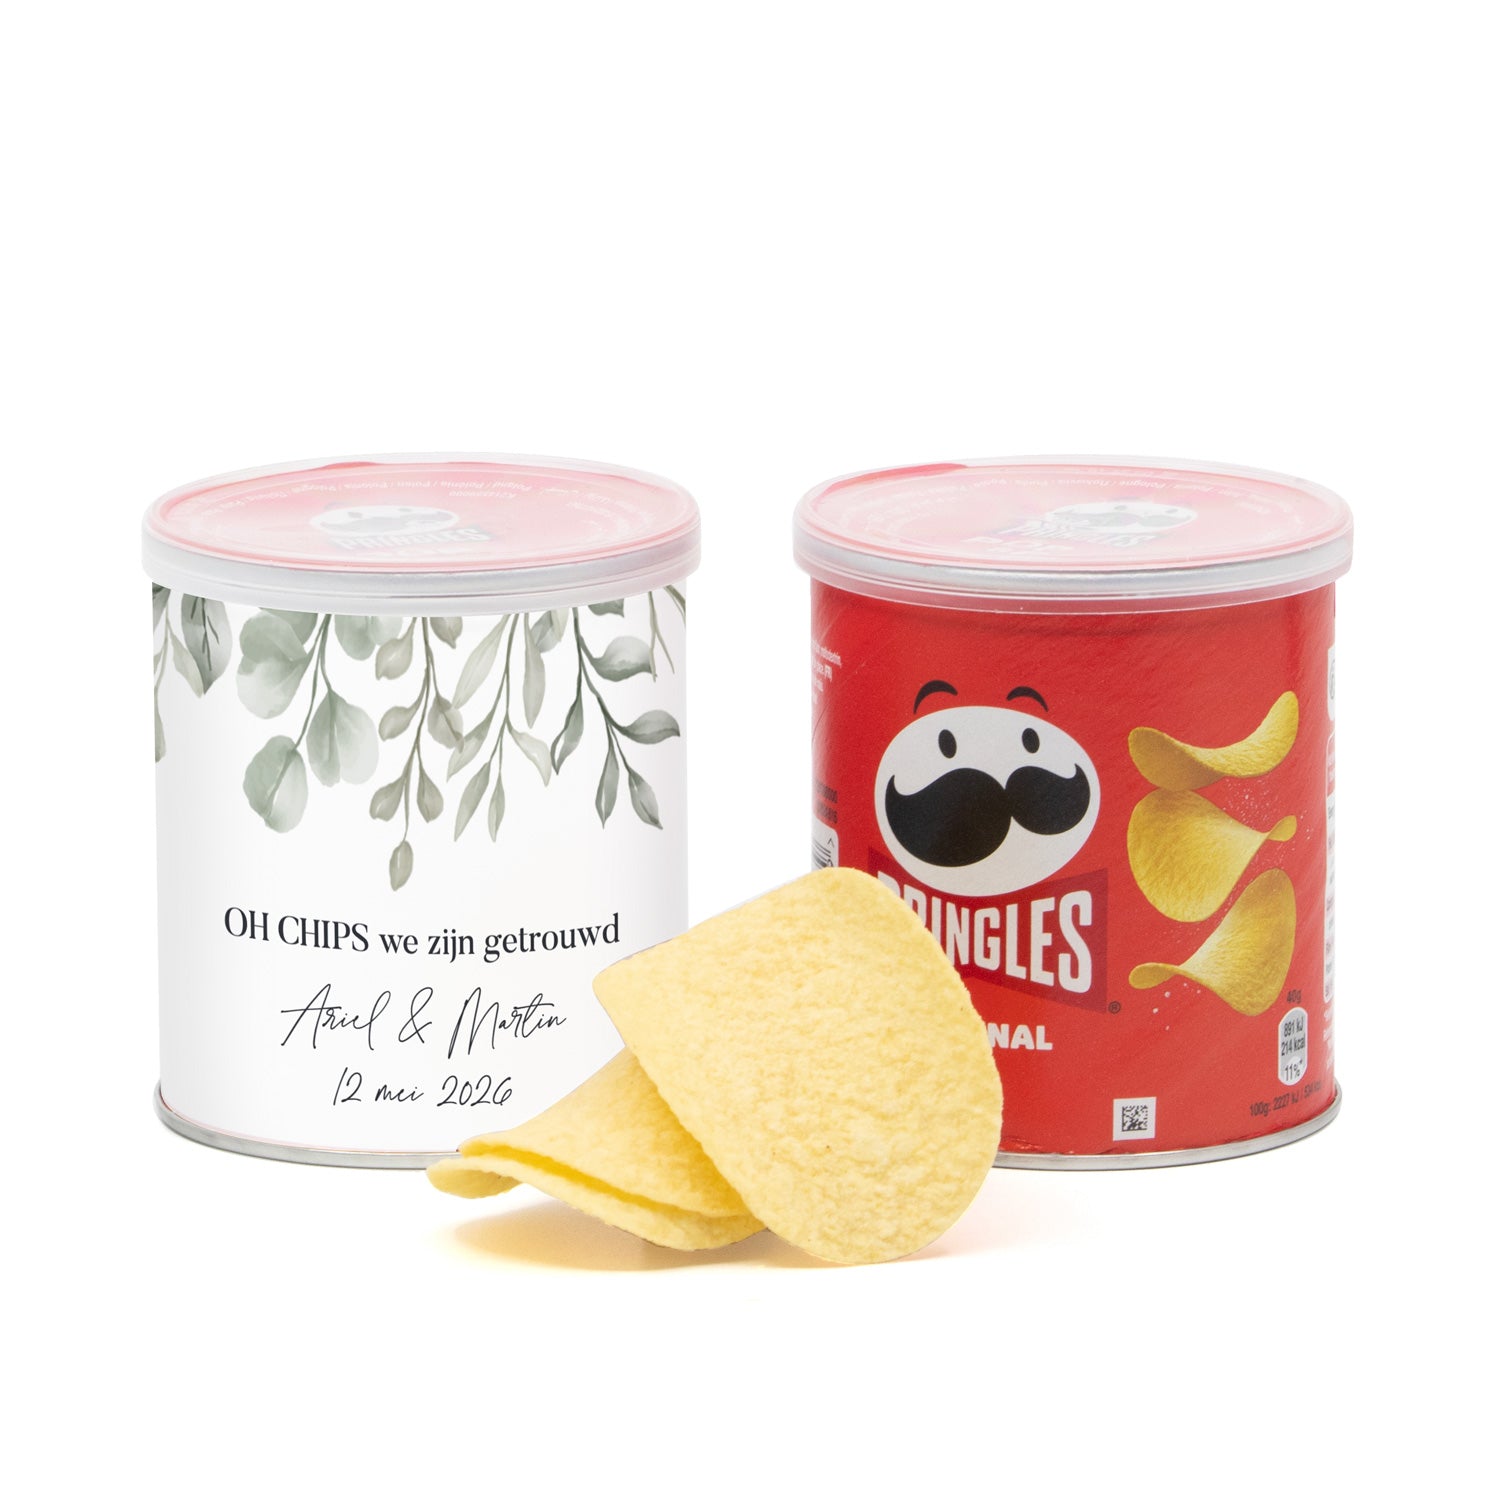 Oh chips! Wij zijn getrouwd Pringles 40 gram - Trouwen - Bedankjes.nl